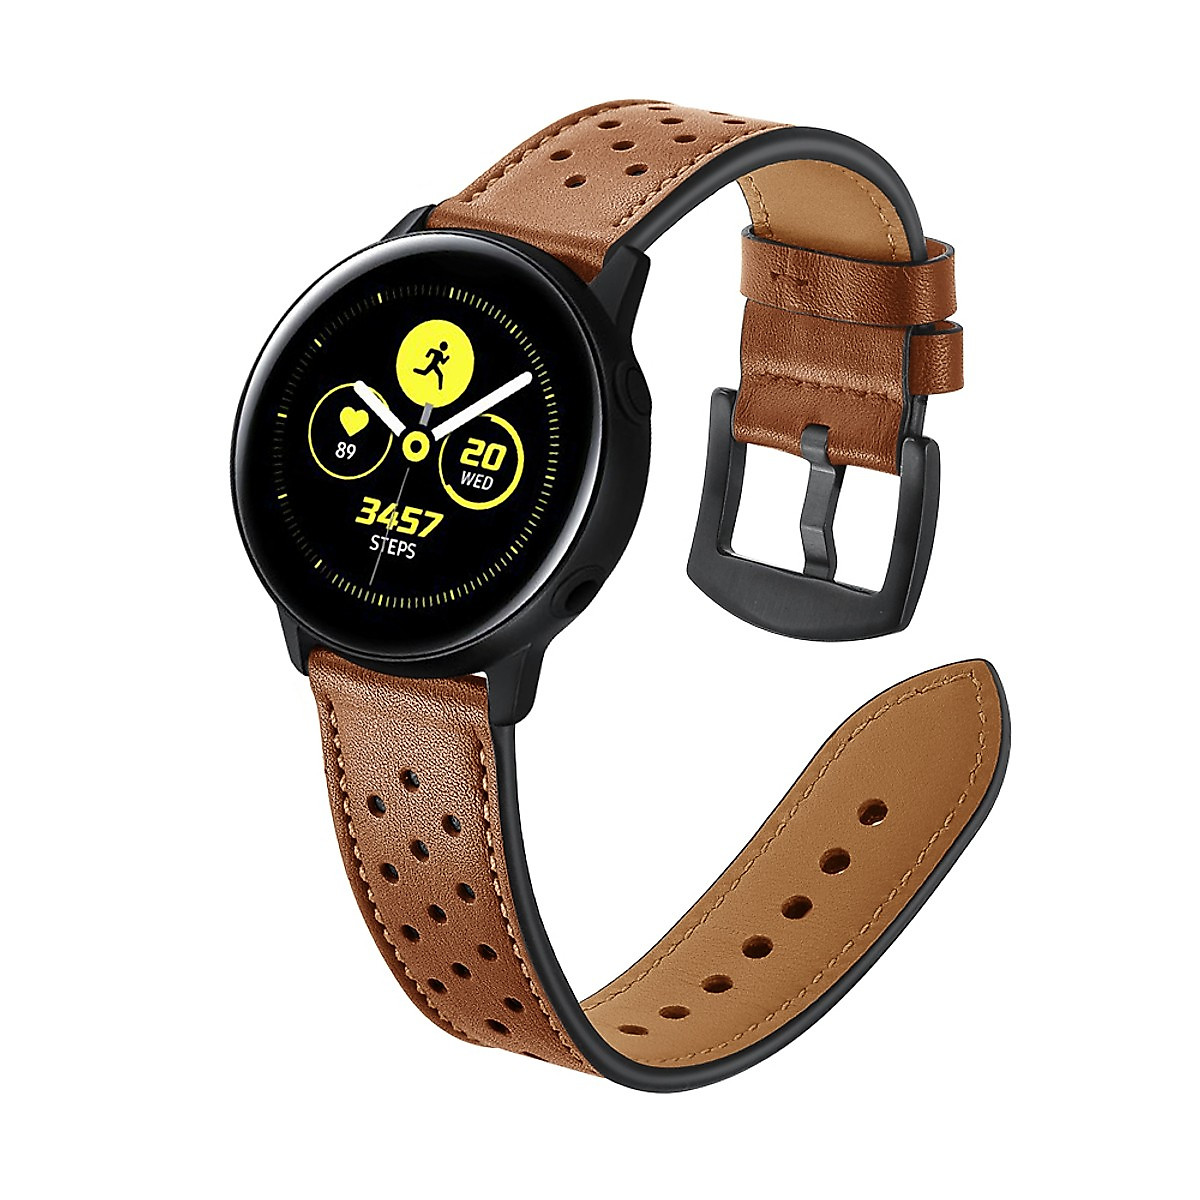 Dây Da Sport Leather Dành Cho Galaxy Watch 46, Huawei GT2, Huawei GT, Gear S3 (Size 22mm)